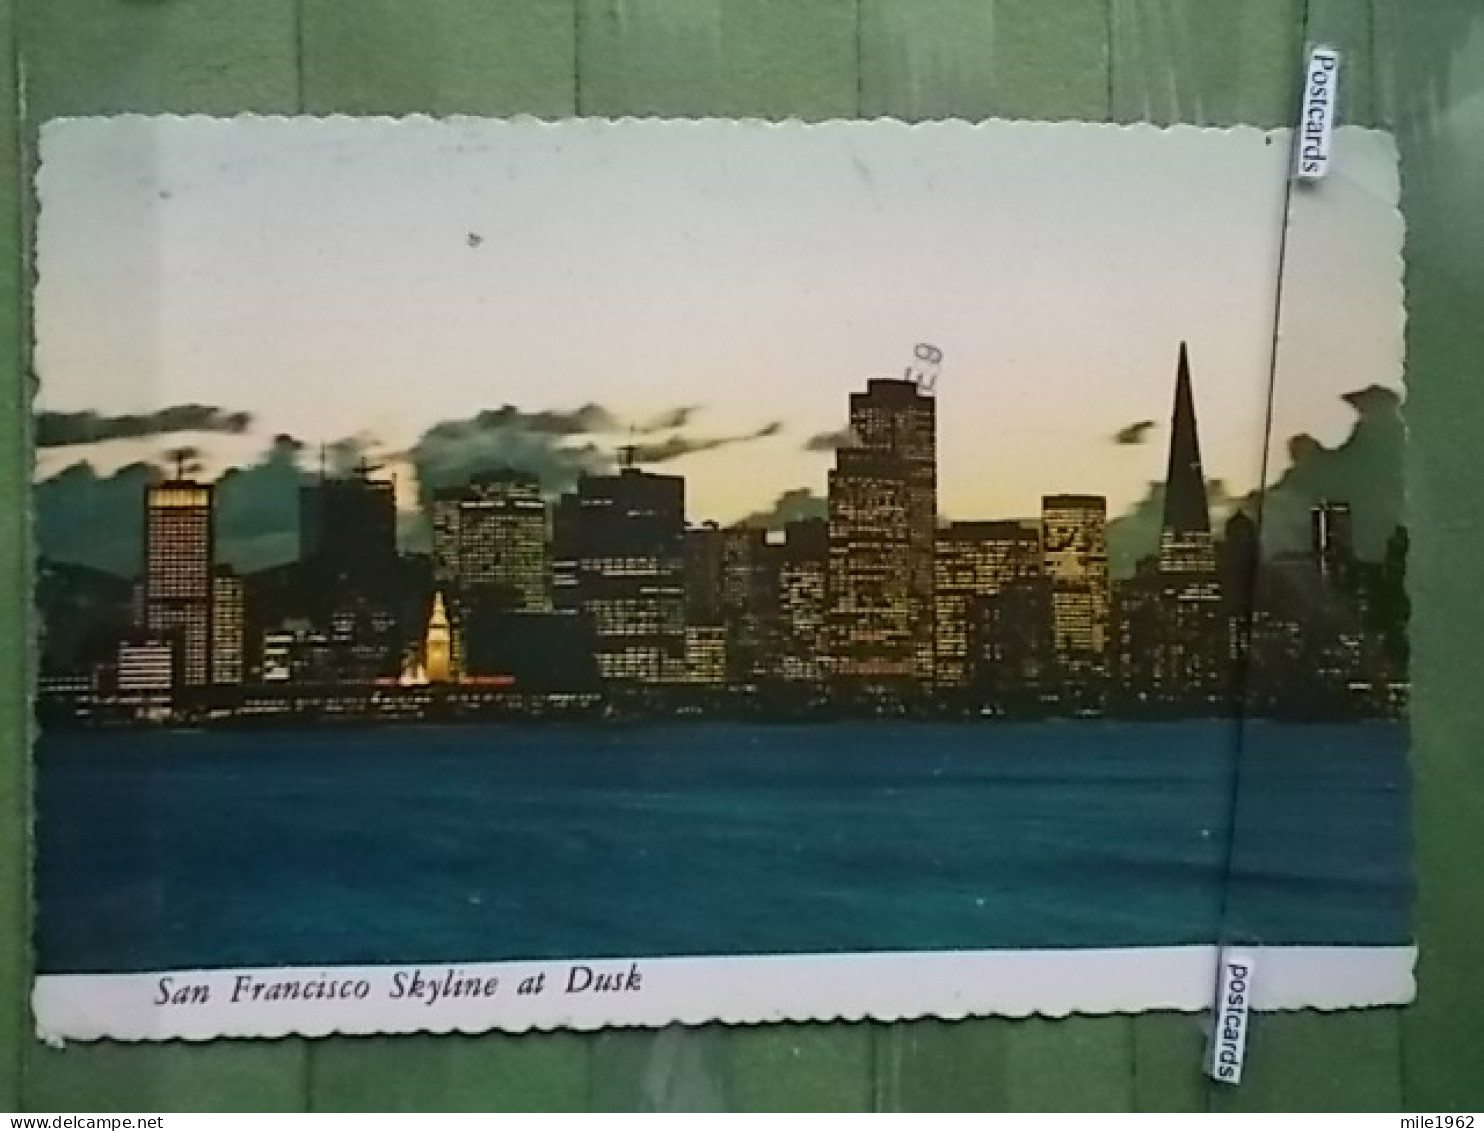 Kov 558-3 - SAN FRANCISCO, CALIFORNIA,  - San Francisco